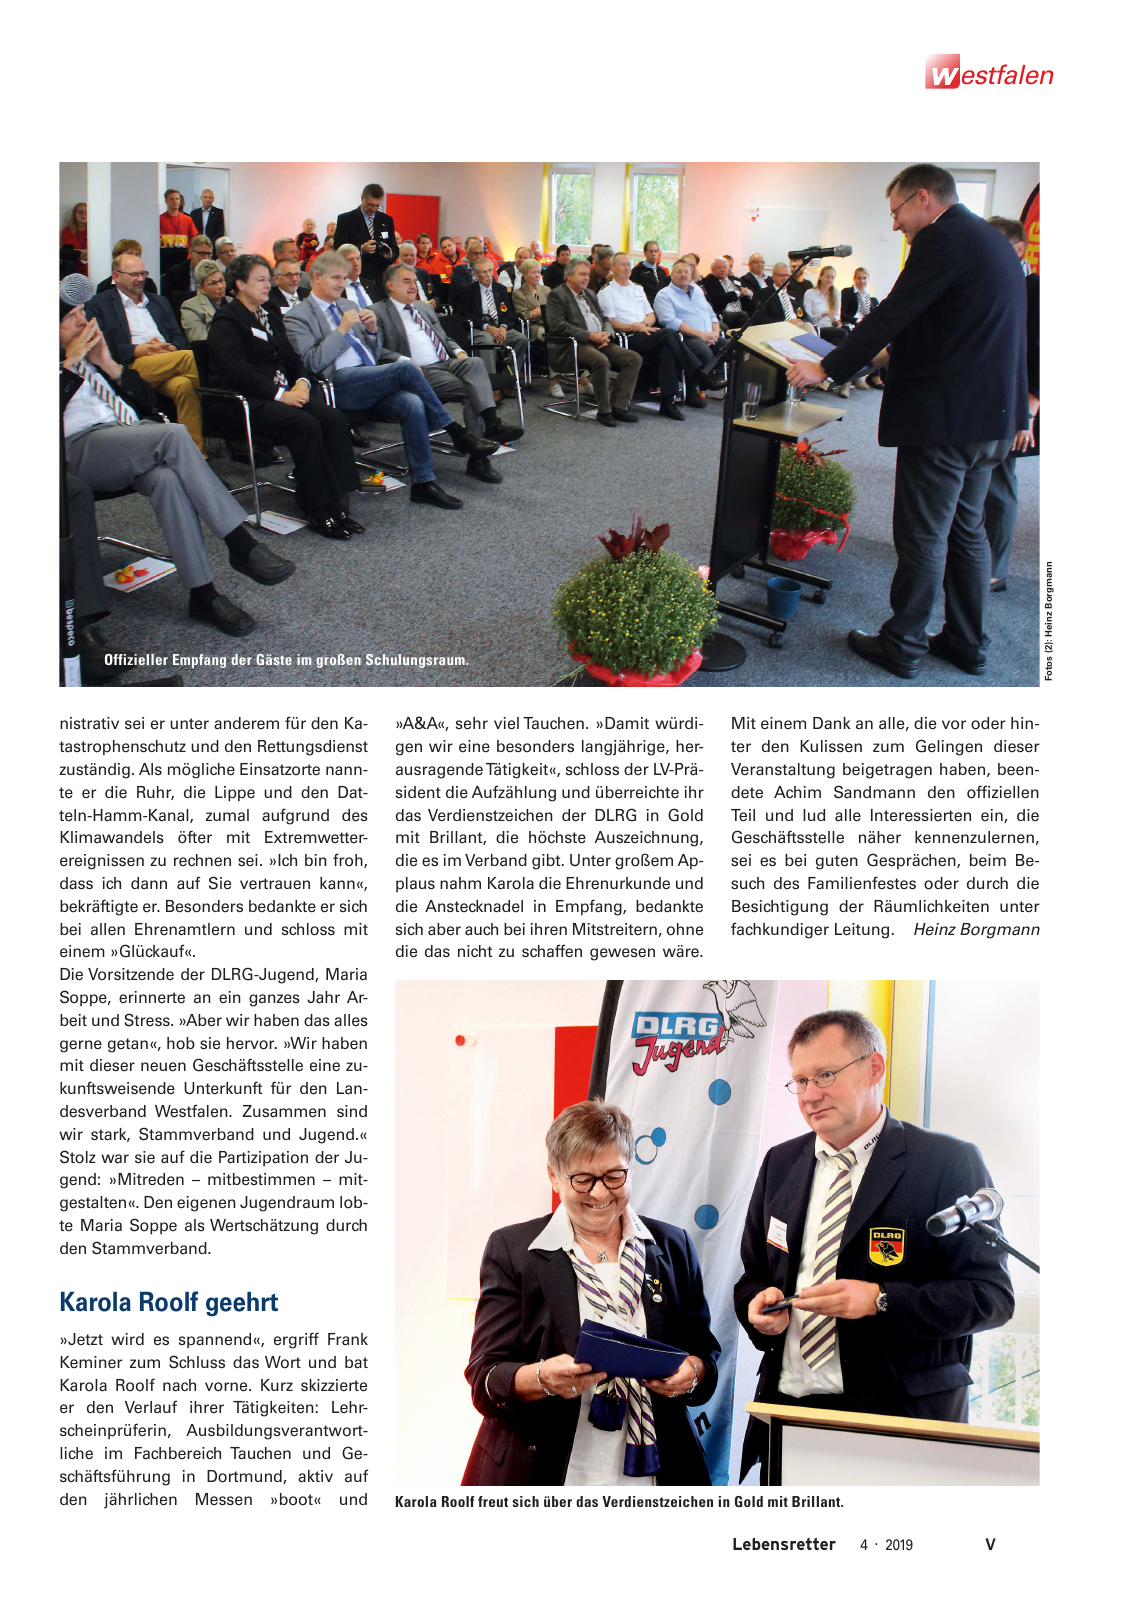 Vorschau Lebensretter 4/2019 -  Westfalen Regionalausgabe Seite 7